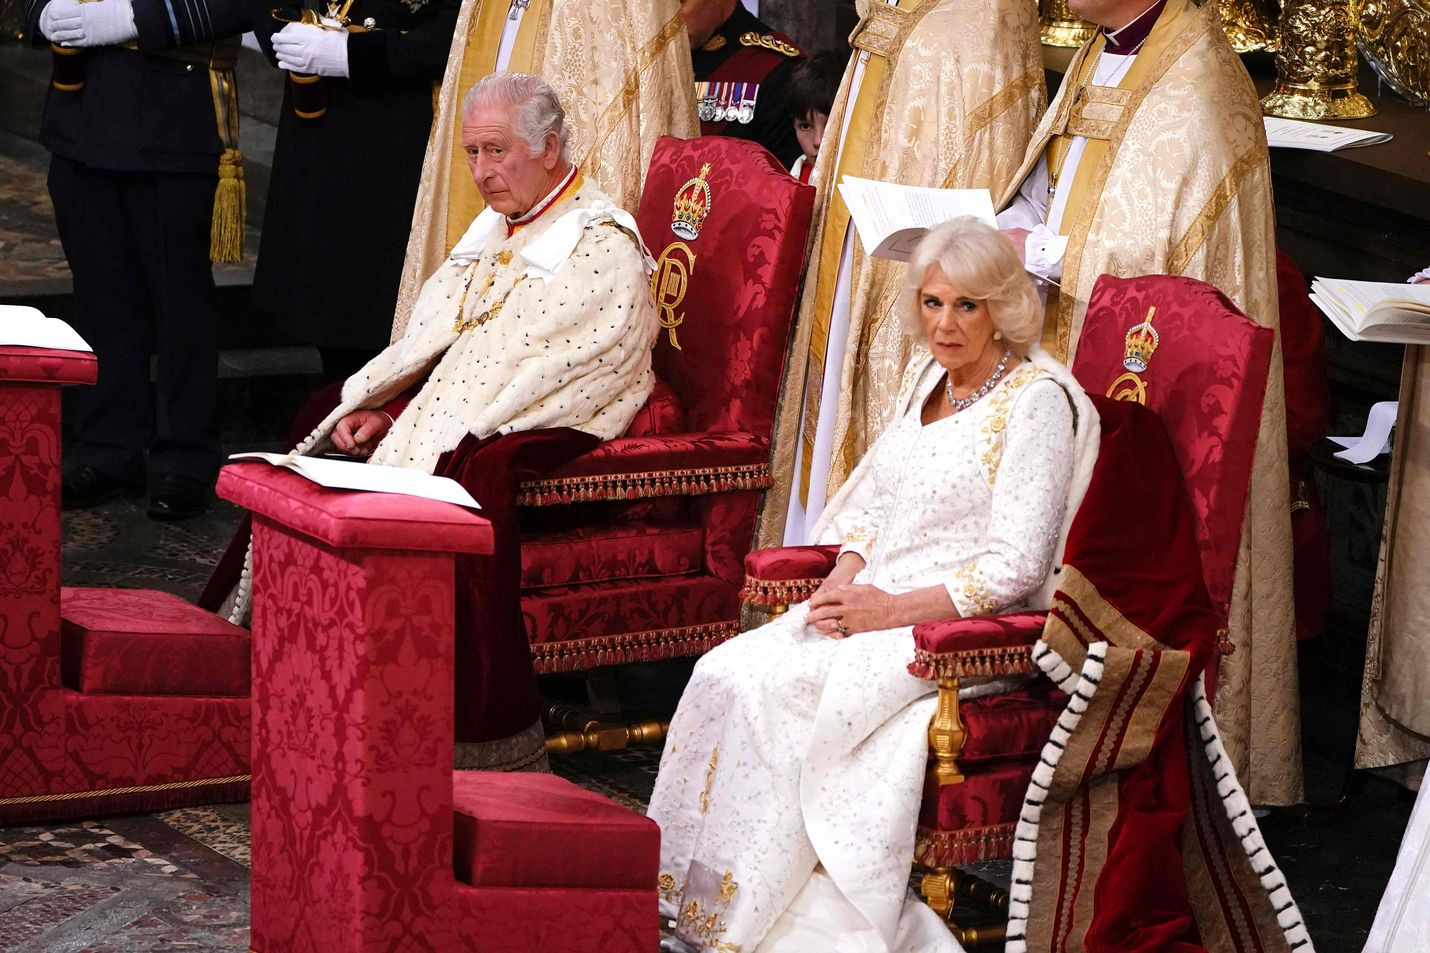 Charles on järjestyksessään 40. Yhdistyneen kuningaskunnan monarkki, jonka kruunajaiset pidetään Westminster Abbeyssa. Edellisen kerran kruunajaiset nähtiin Britanniassa vuonna 1953, kun Charlesin äiti, kuningatar Elisabet kruunattiin. Kuvassa myös Charlesin kuningatarpuoliso Camilla.